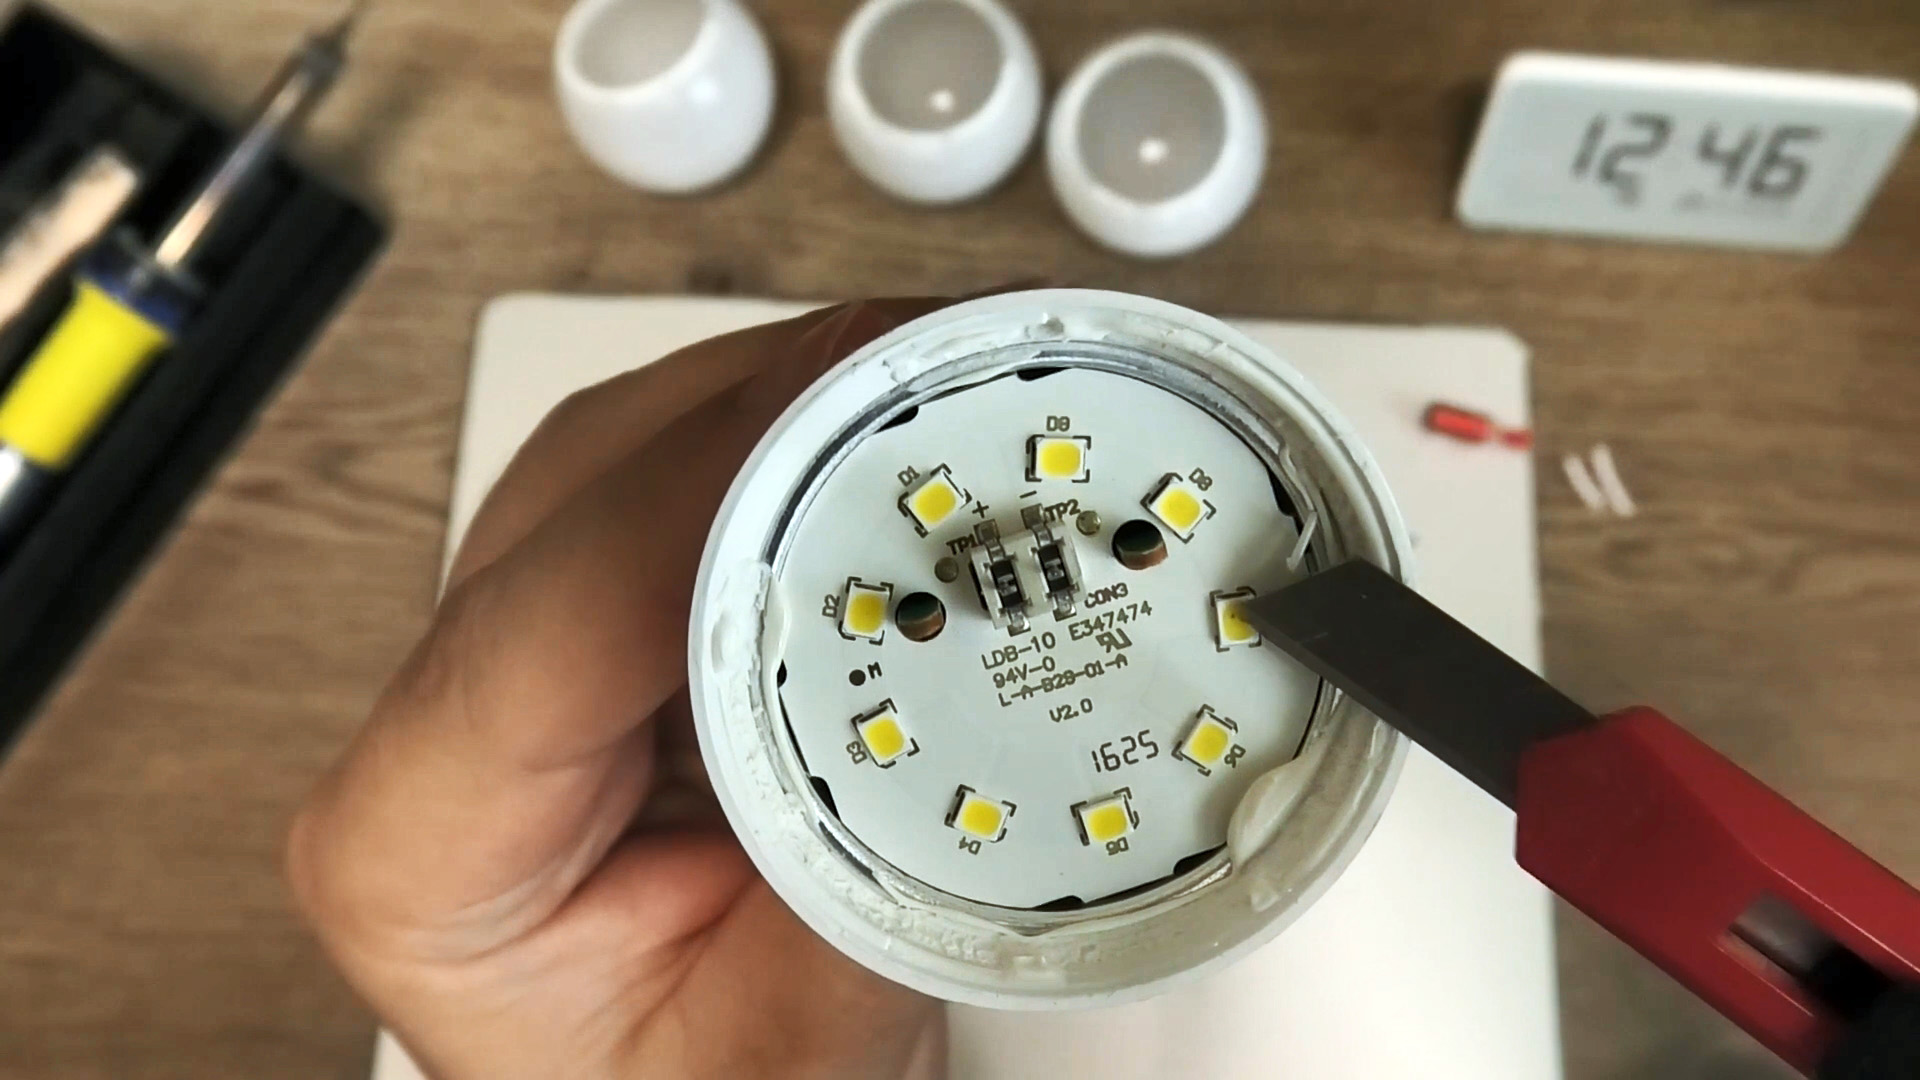 Элементарная инструкция как починить светодиодную лампу, без замены деталей